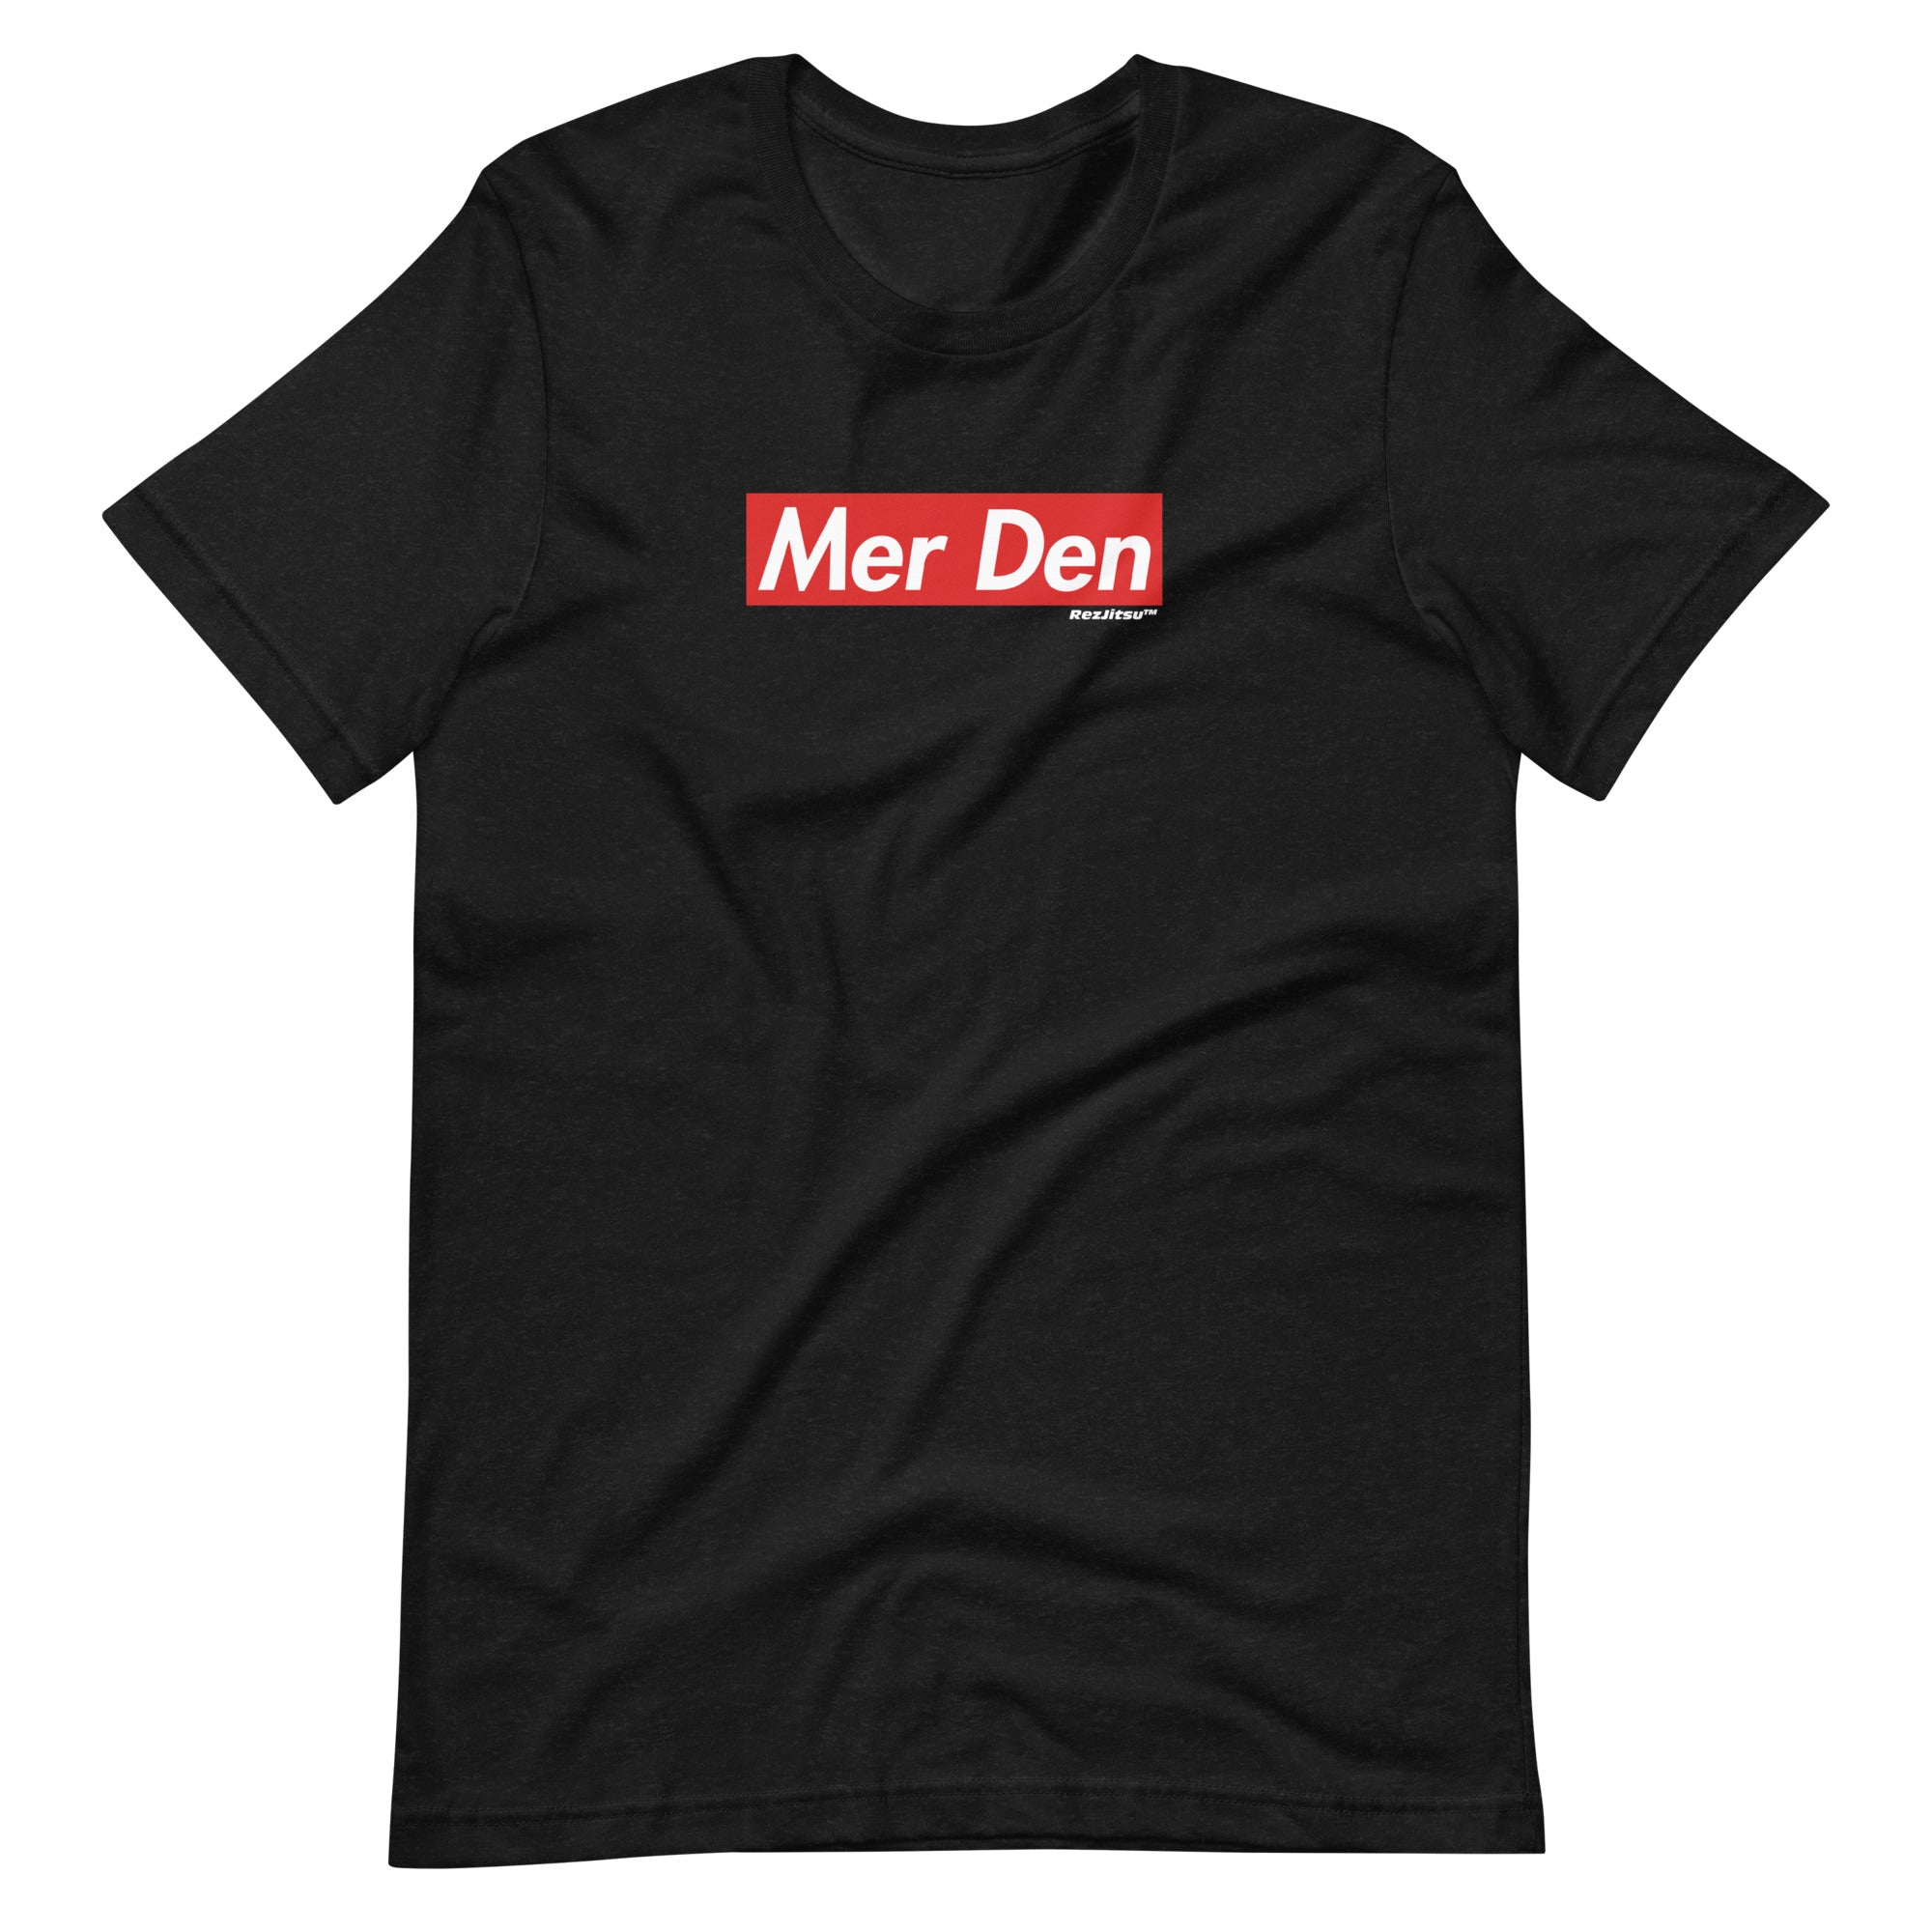 MER DEN T-Shirt